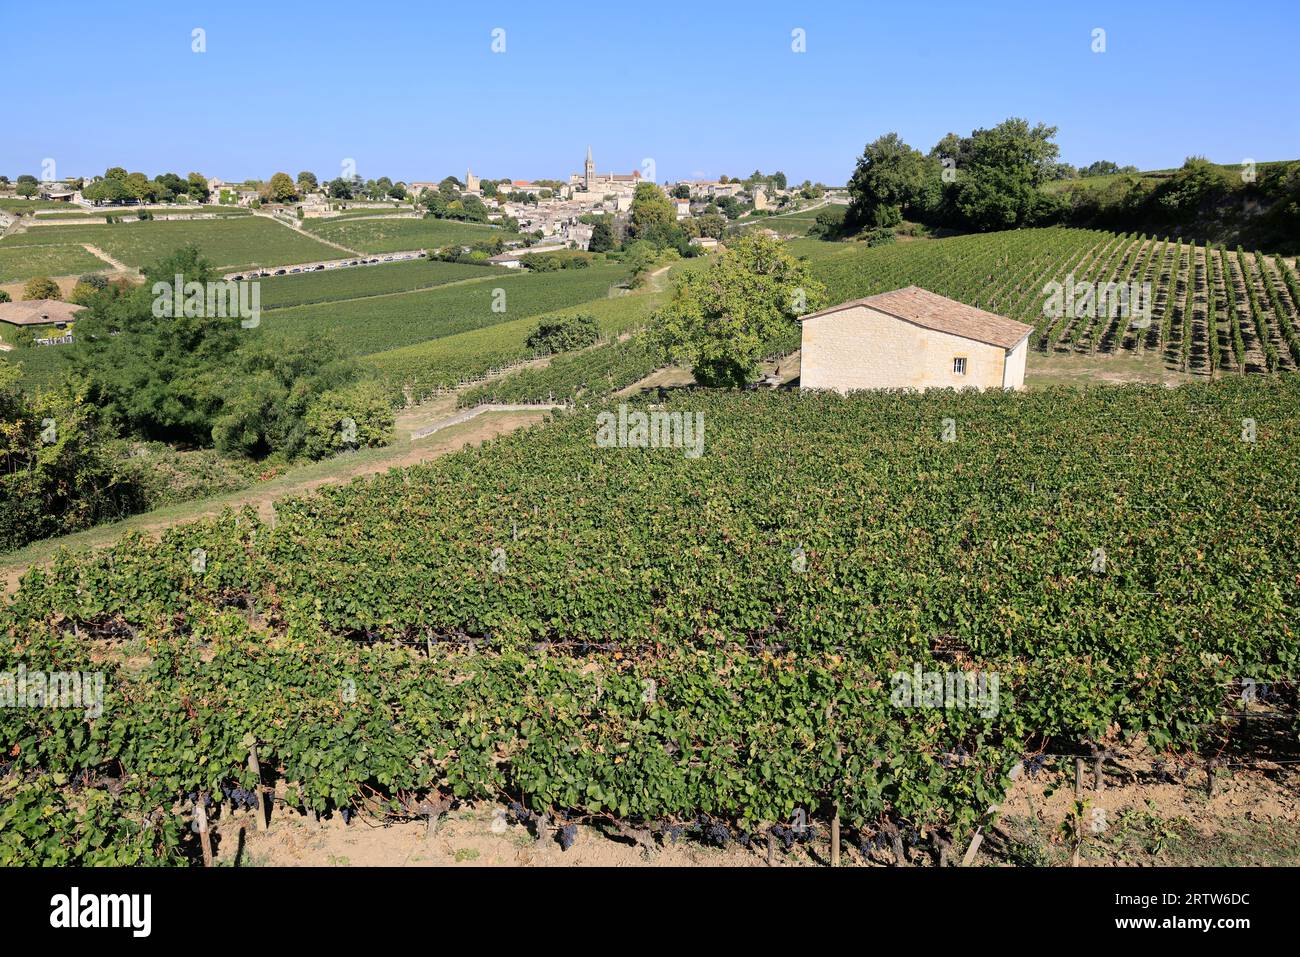 Saint-Émilion dans ses vignes et son vignoble rouge. Saint-Émilion est classé parmi les plus beaux villages de France. Viticulture, vin et t Banque D'Images